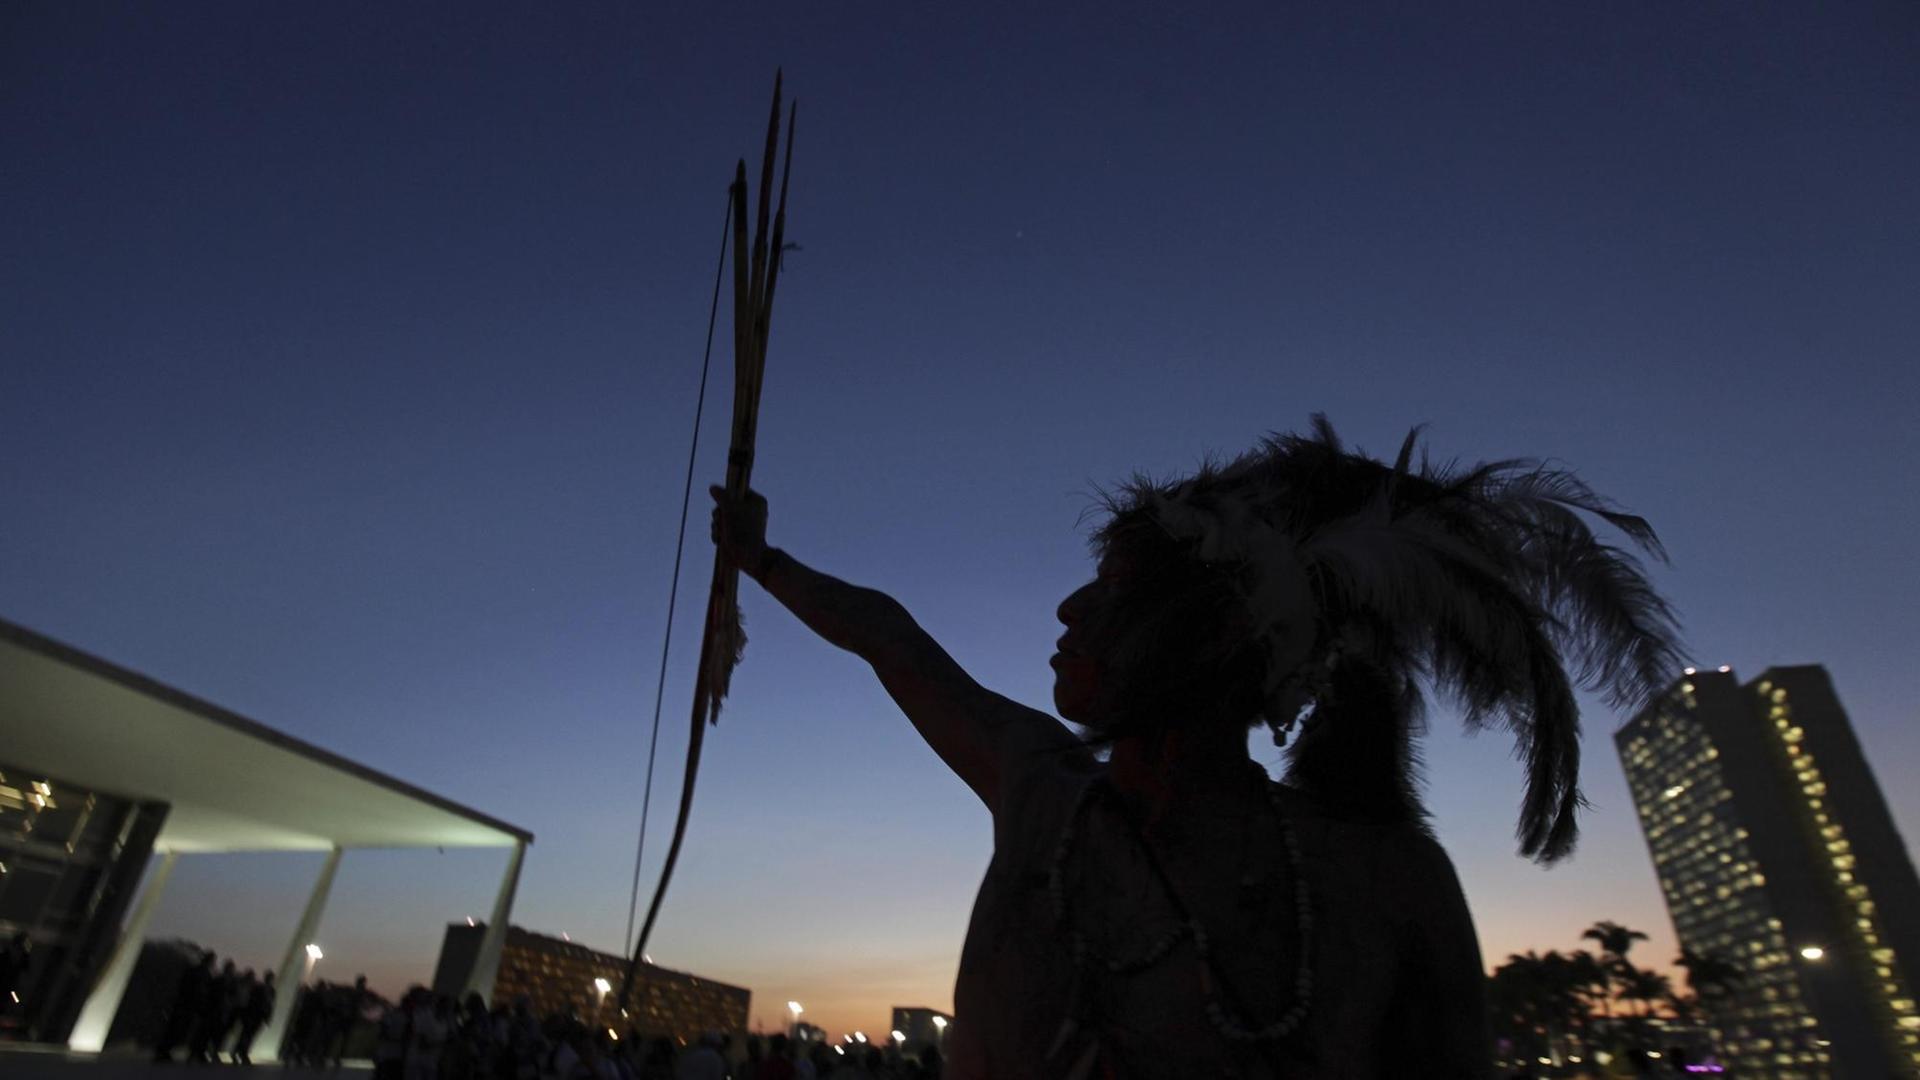 Ein Angehöriger der Guarani protestiert mit Pfeil und Bogen.